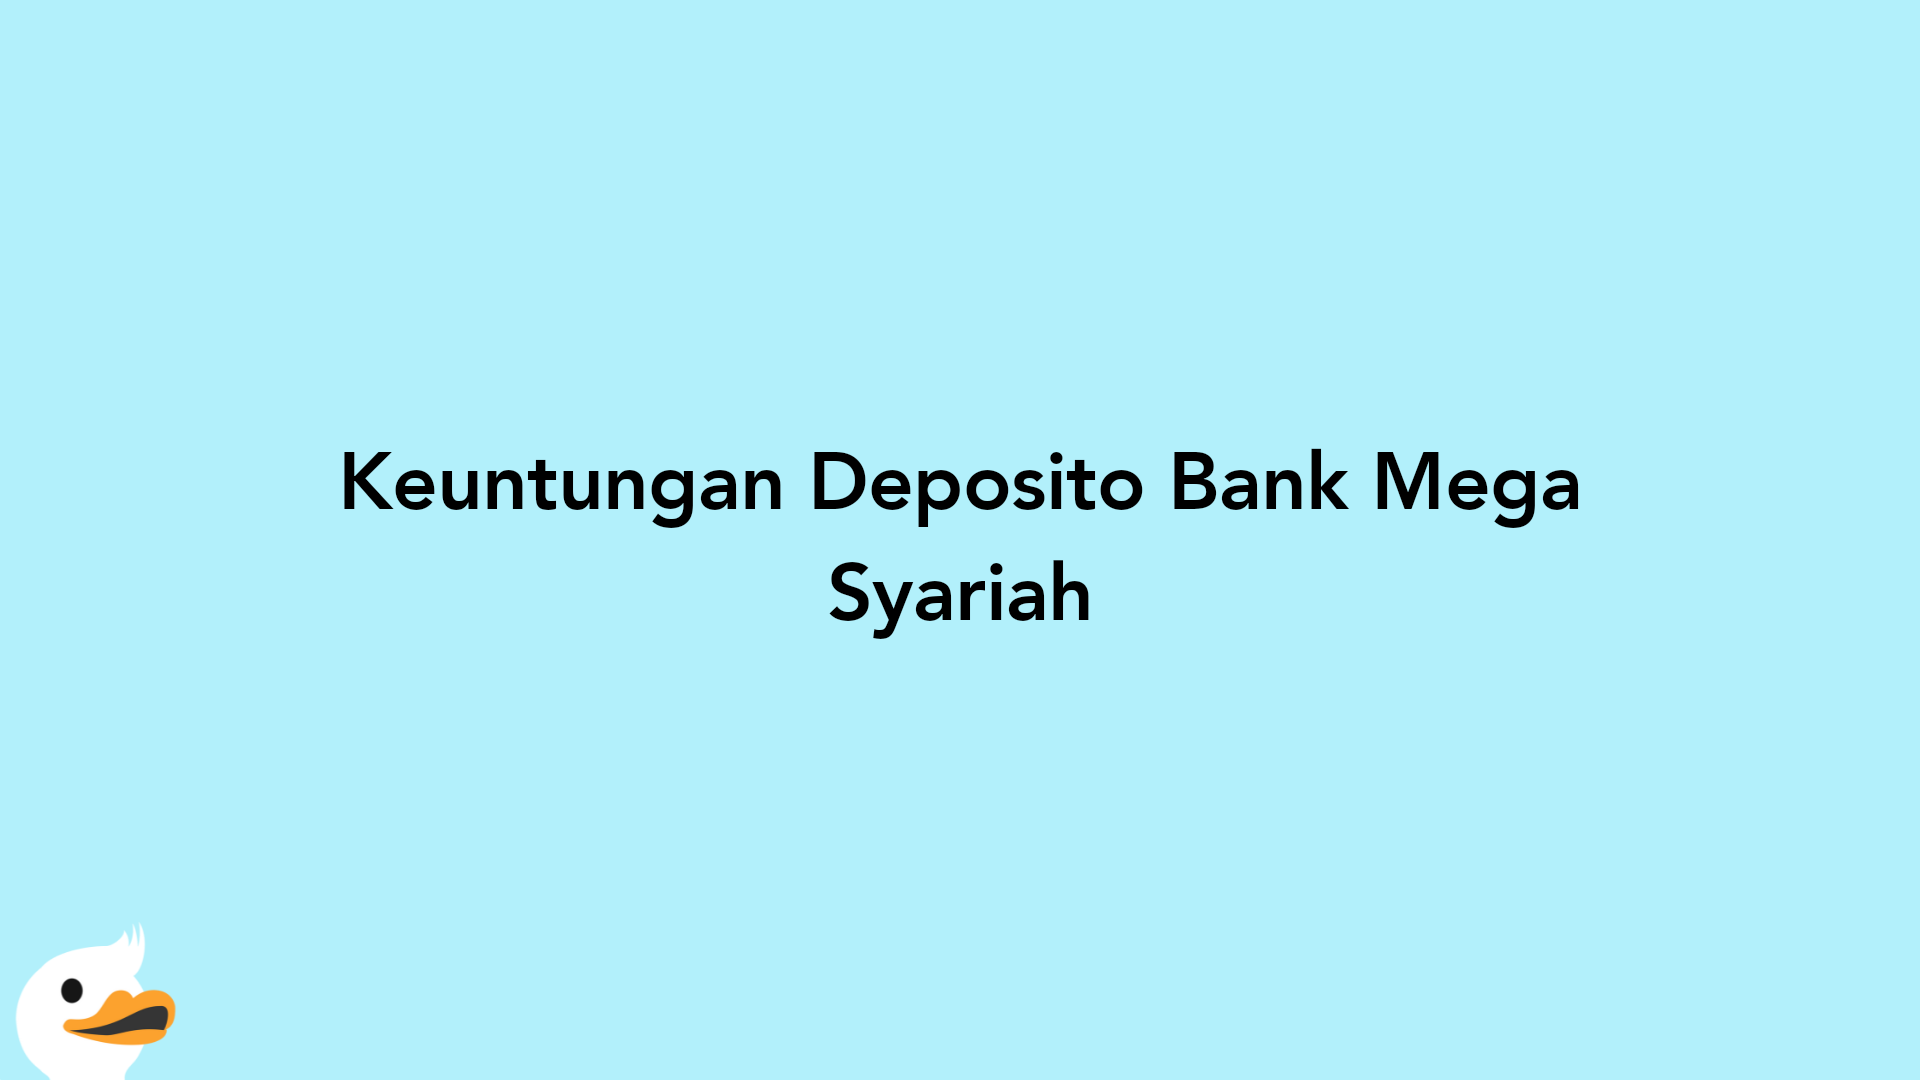 Keuntungan Deposito Bank Mega Syariah